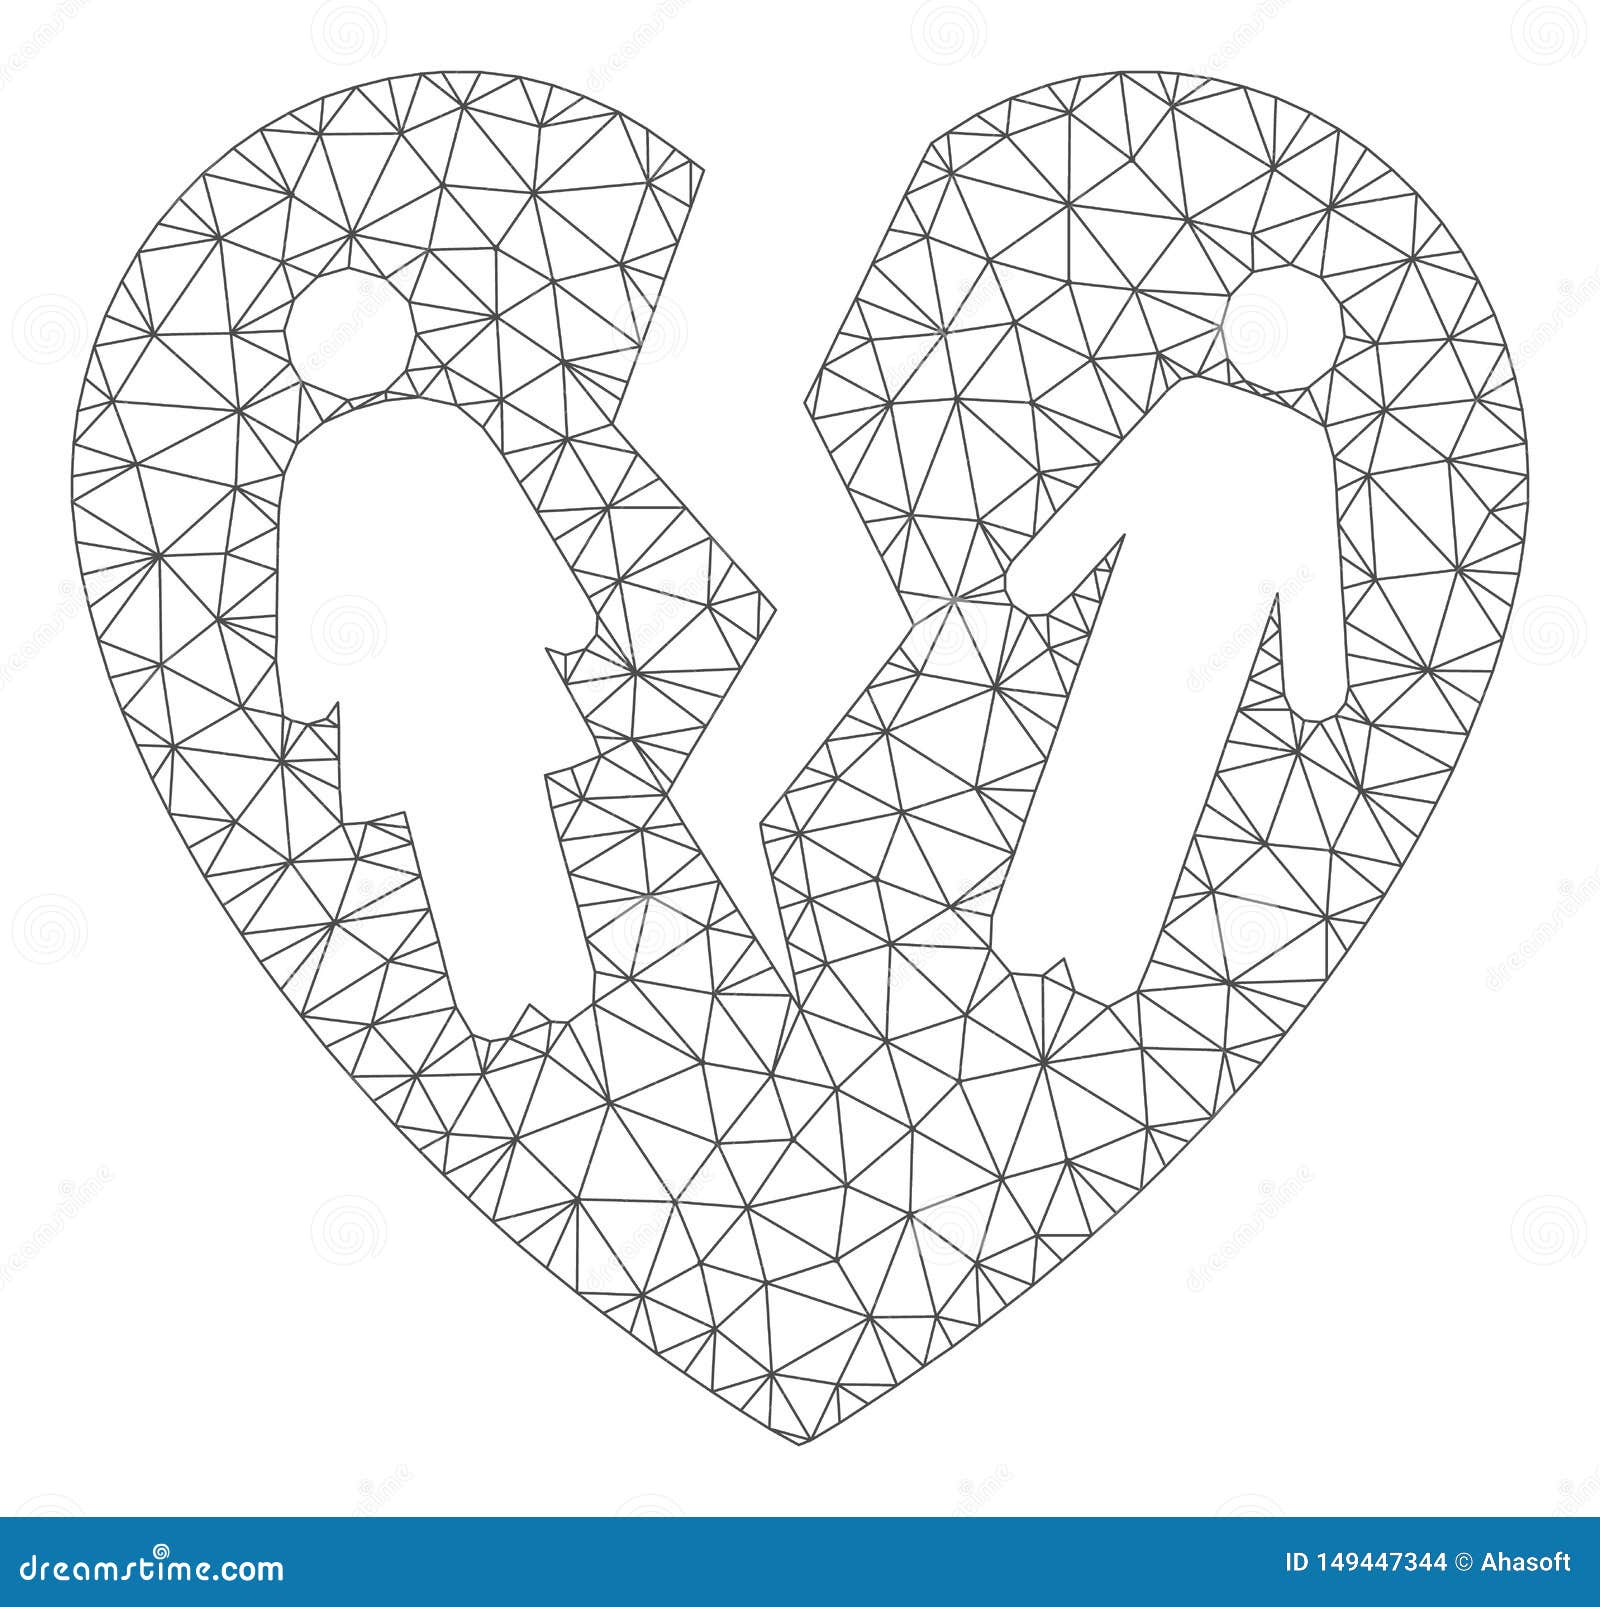 Broken Family Heart Polygonal Frame Vector Mesh Illustration Stock Vector -  Illustration of network, element: 149447344